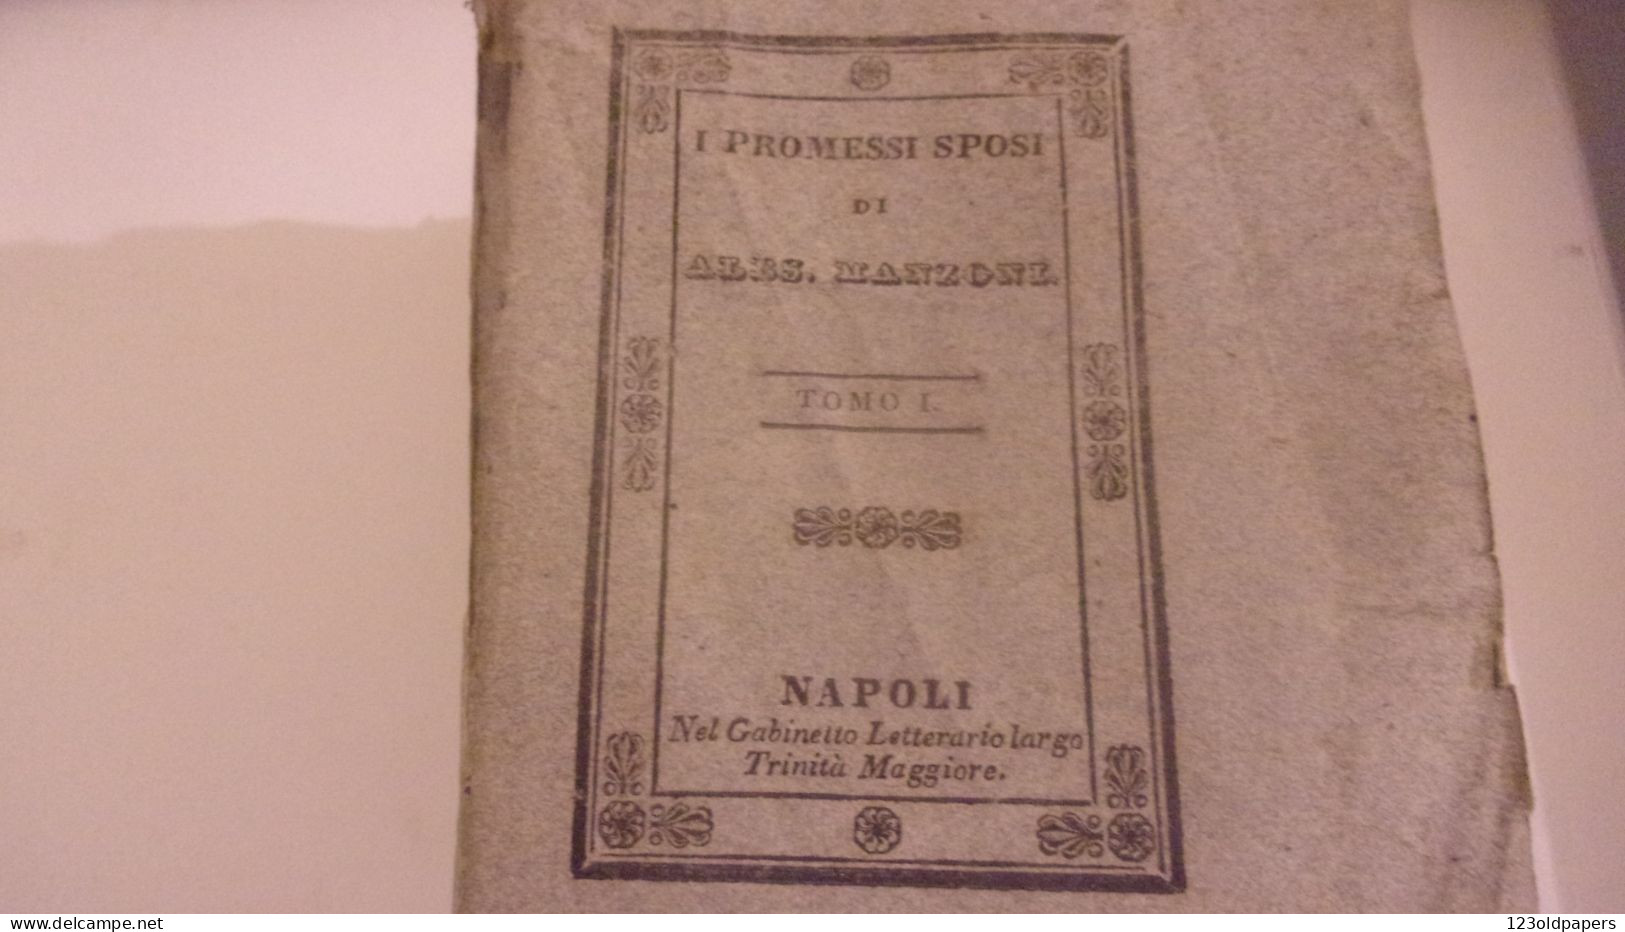 1836 6 VOL COMPLET I PROMESSI SPOSI DI ALES MANZONI  NAPOLI GABINETTO LETTERARIO - Livres Anciens